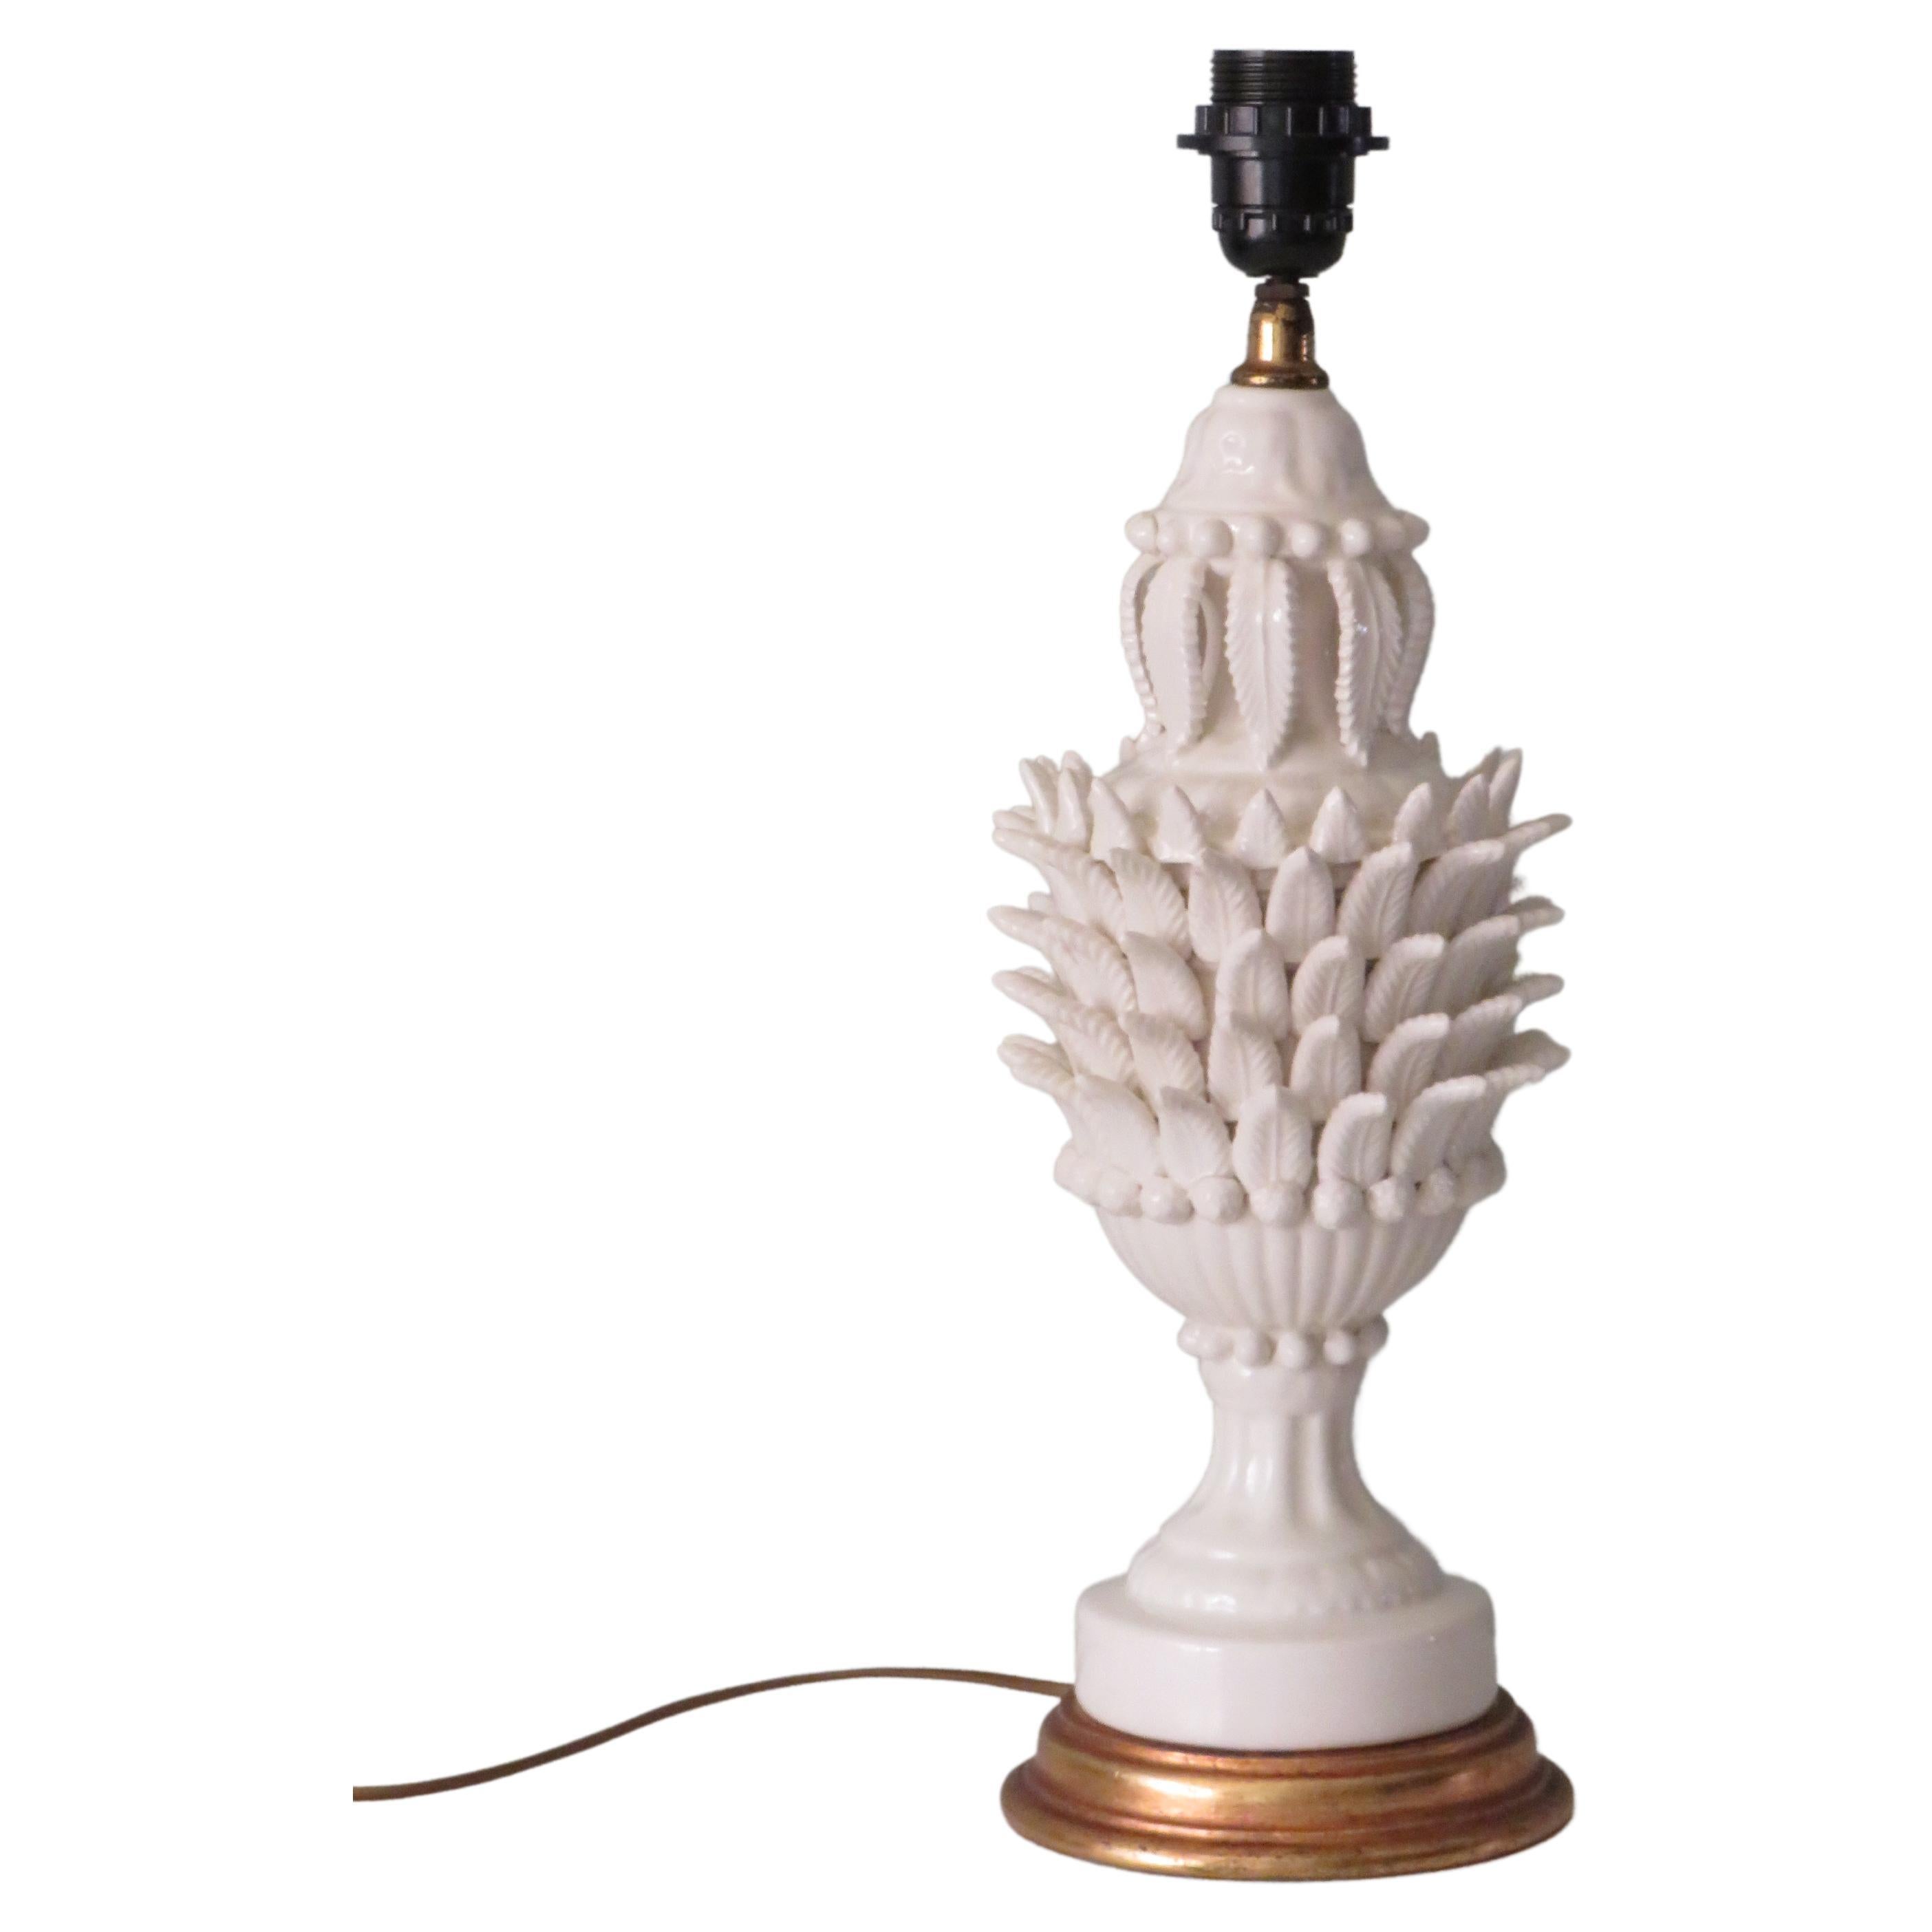 Base de lampe Bondia Manises en céramique blanche:: années 1950 Espagne